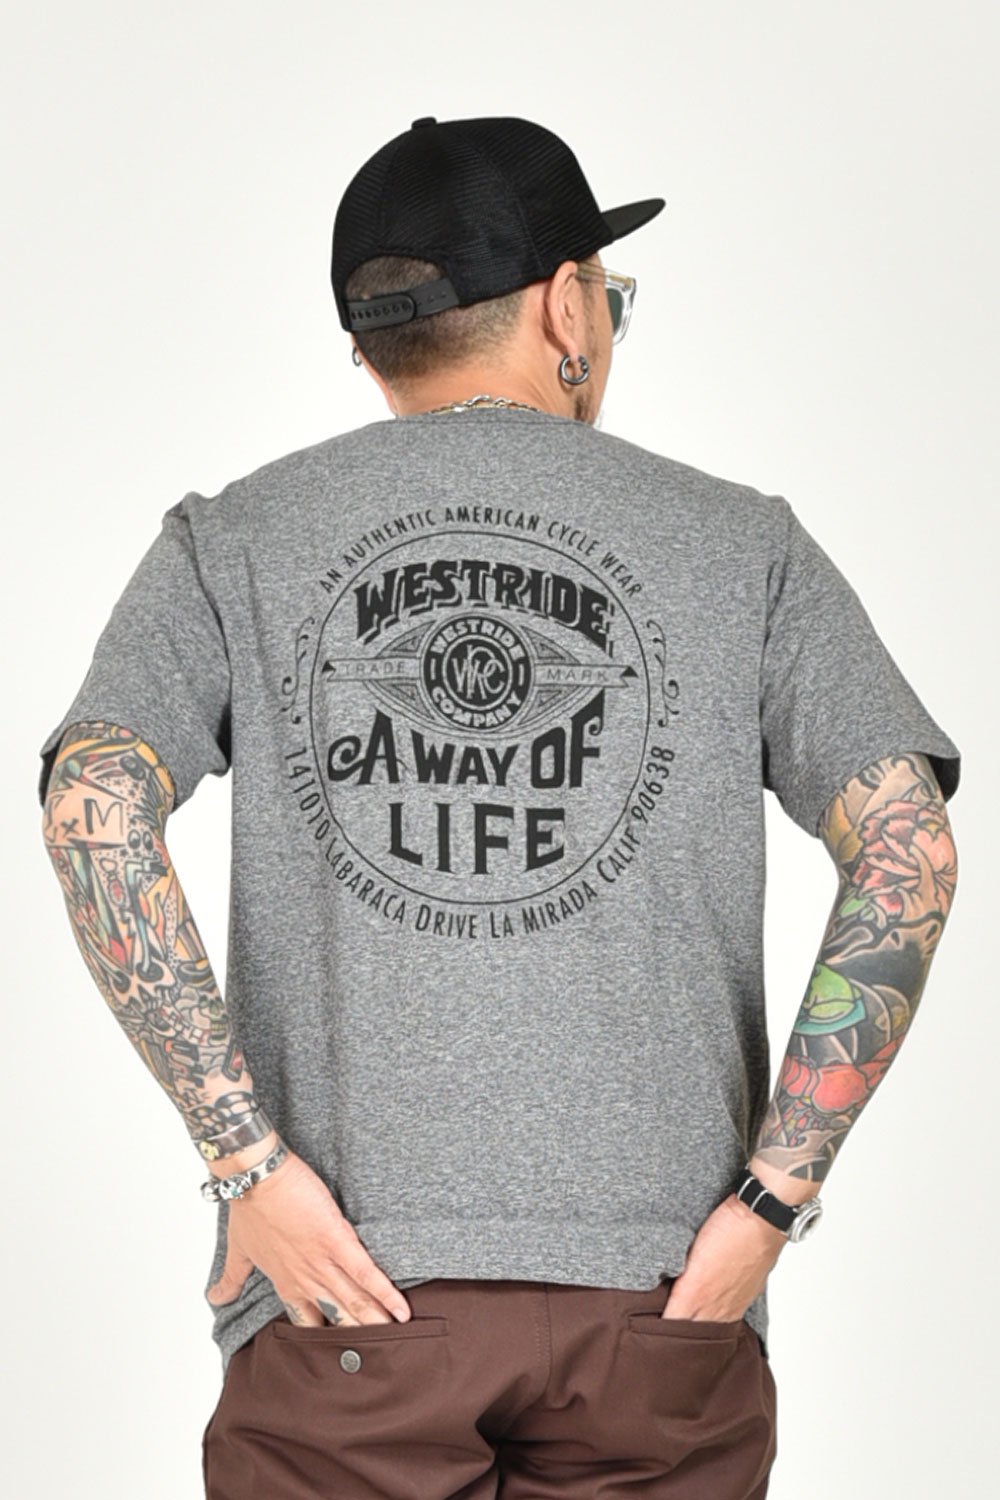 WESTRIDE(ウエストライド) Tシャツ PT.TEE19-10 通販正規取扱 